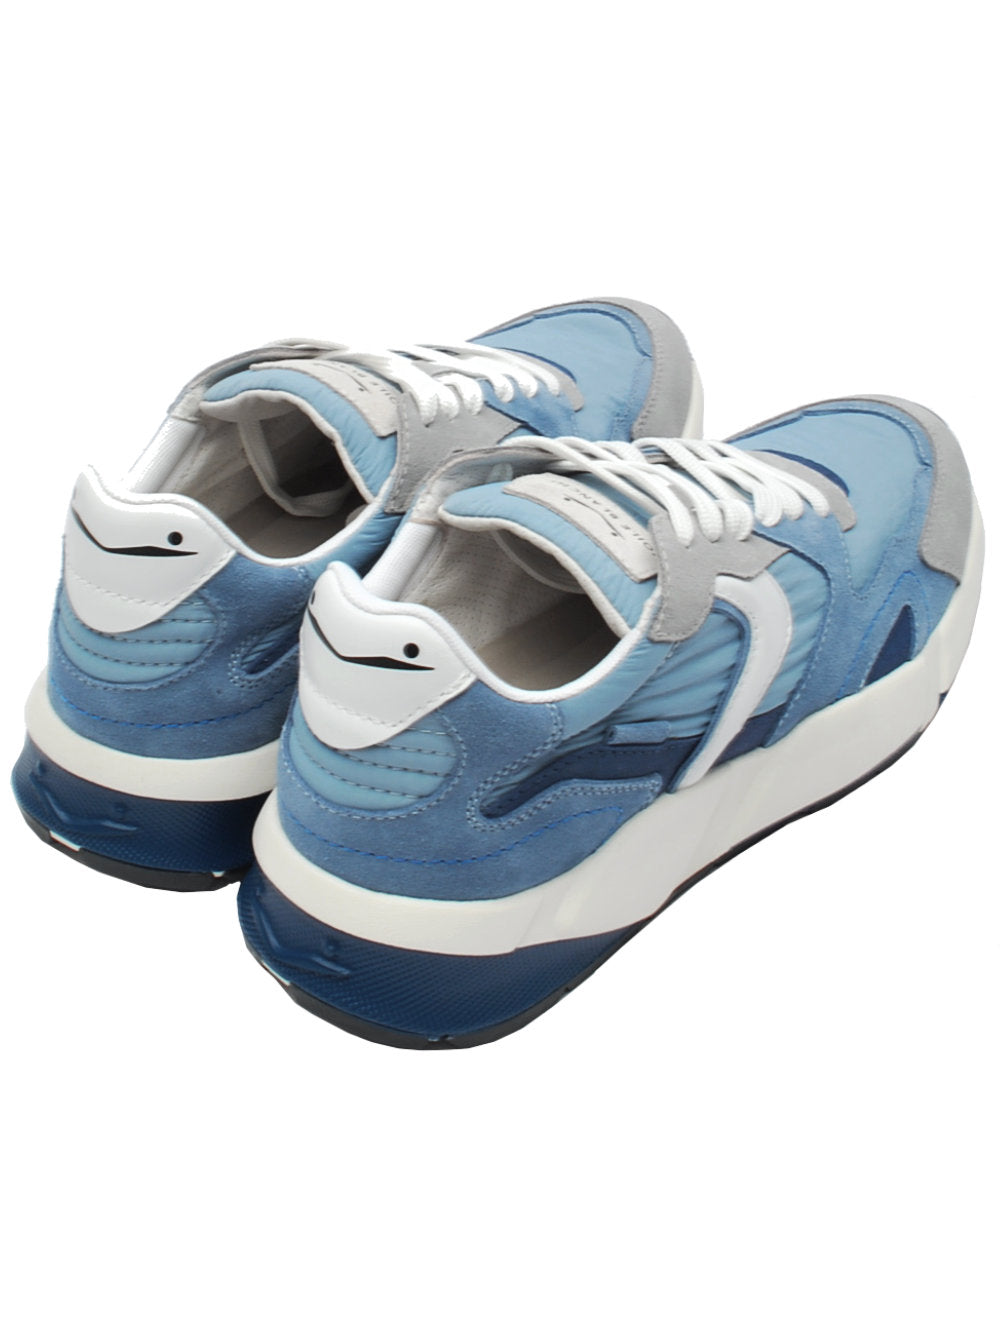 Voile Blanche sneaker club19 8288 grigio, azzurro, blu pe24